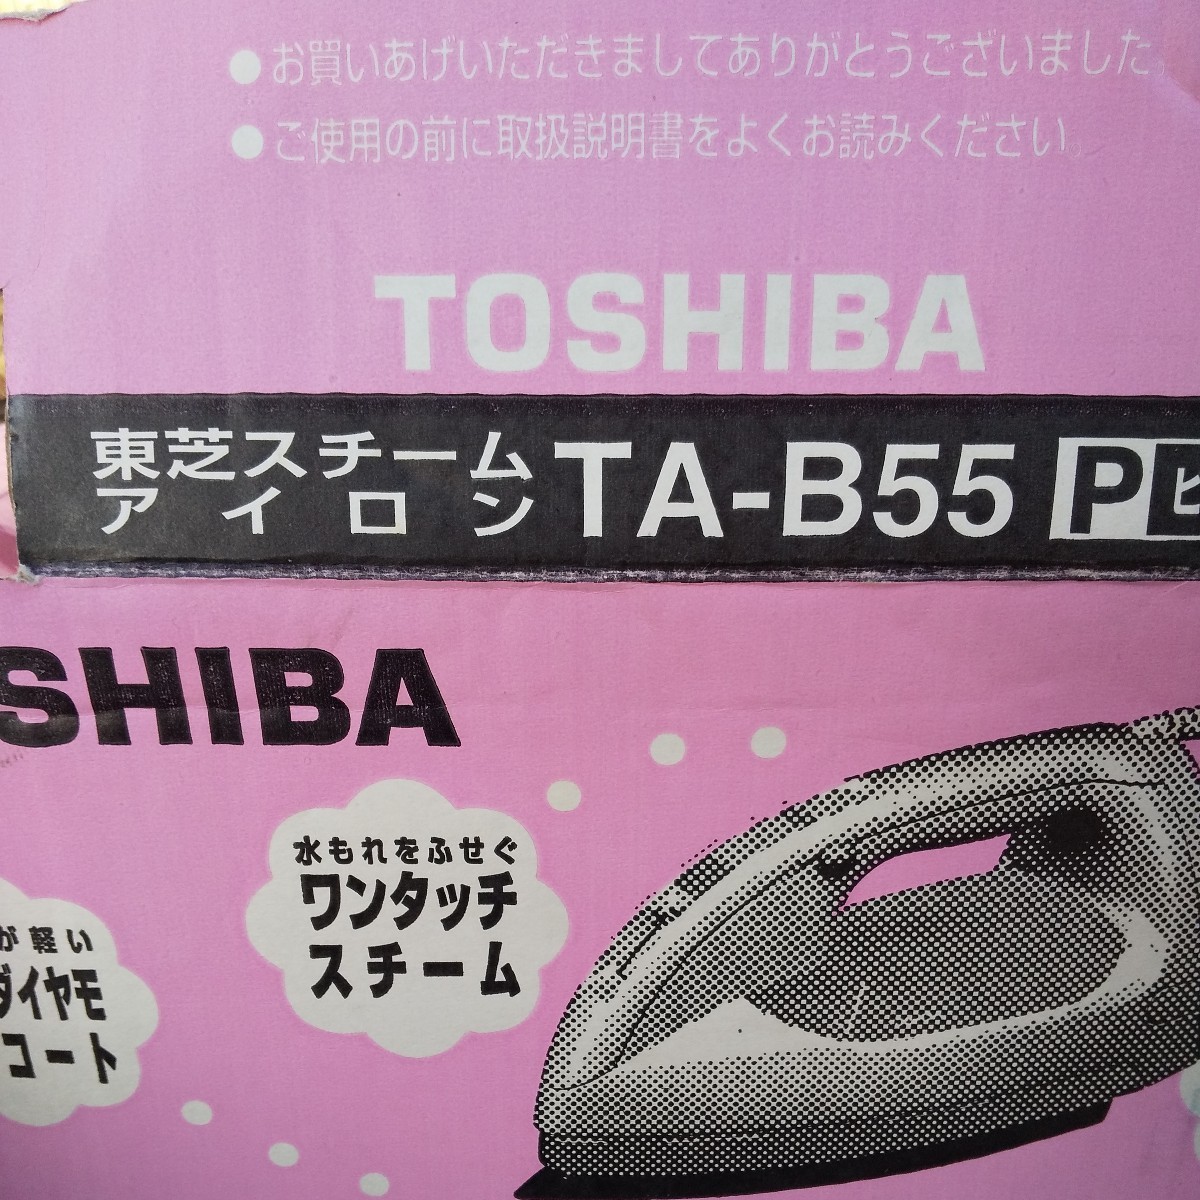 TOSHIBA 東芝 ta-b55 ピンク 熱くなりました アイロン スチームアイロン ゆうパック60_画像1